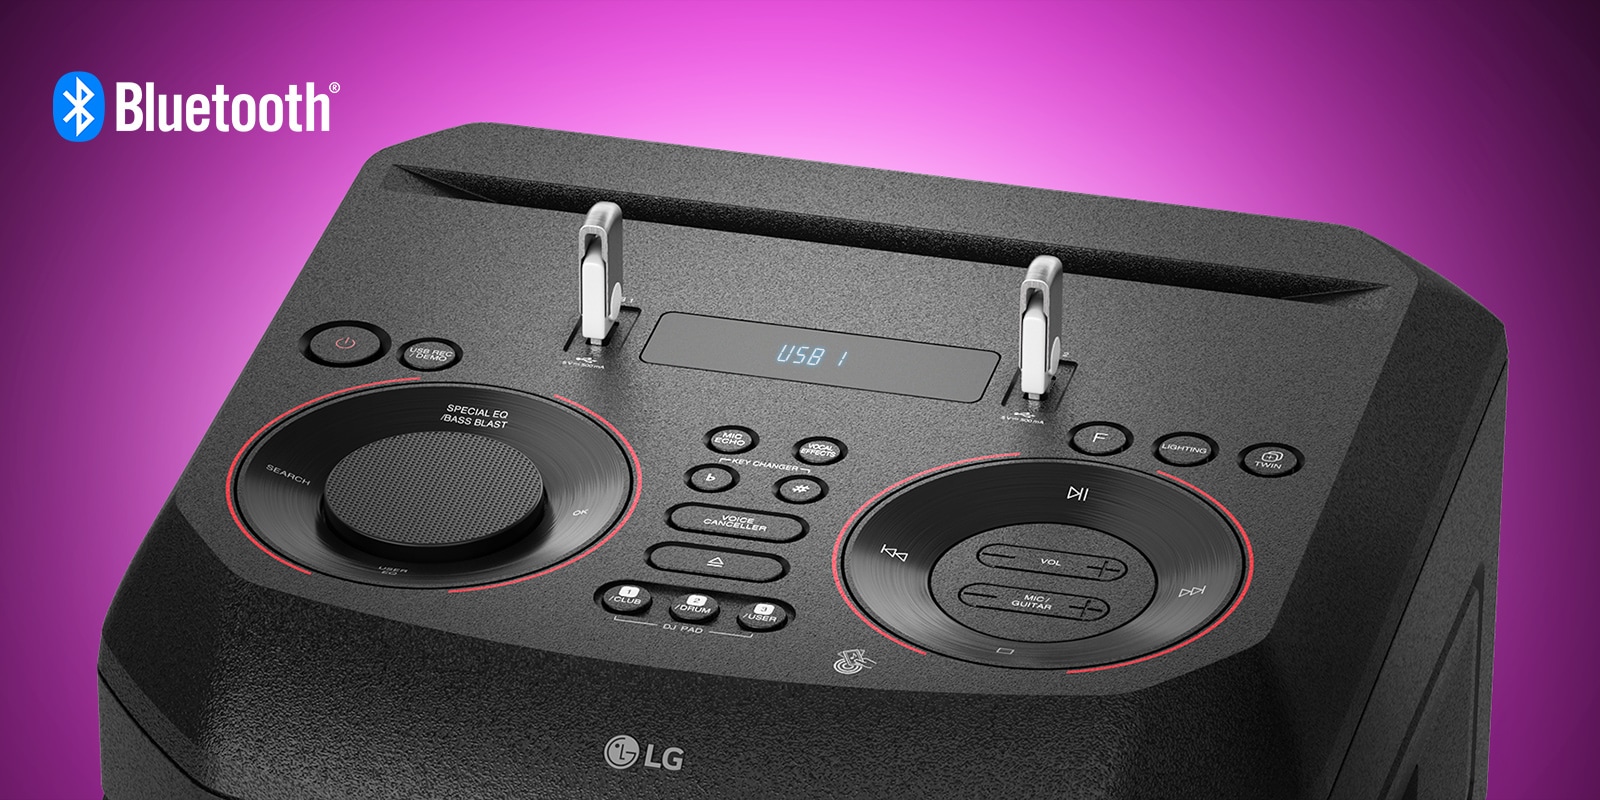 Prikaz izbliza kontrola na gornjoj strani sustava LG XBOOM, s dva priključena USB uređaja. Logotip Bluetooth prikazan je u gornjem lijevom kutu.